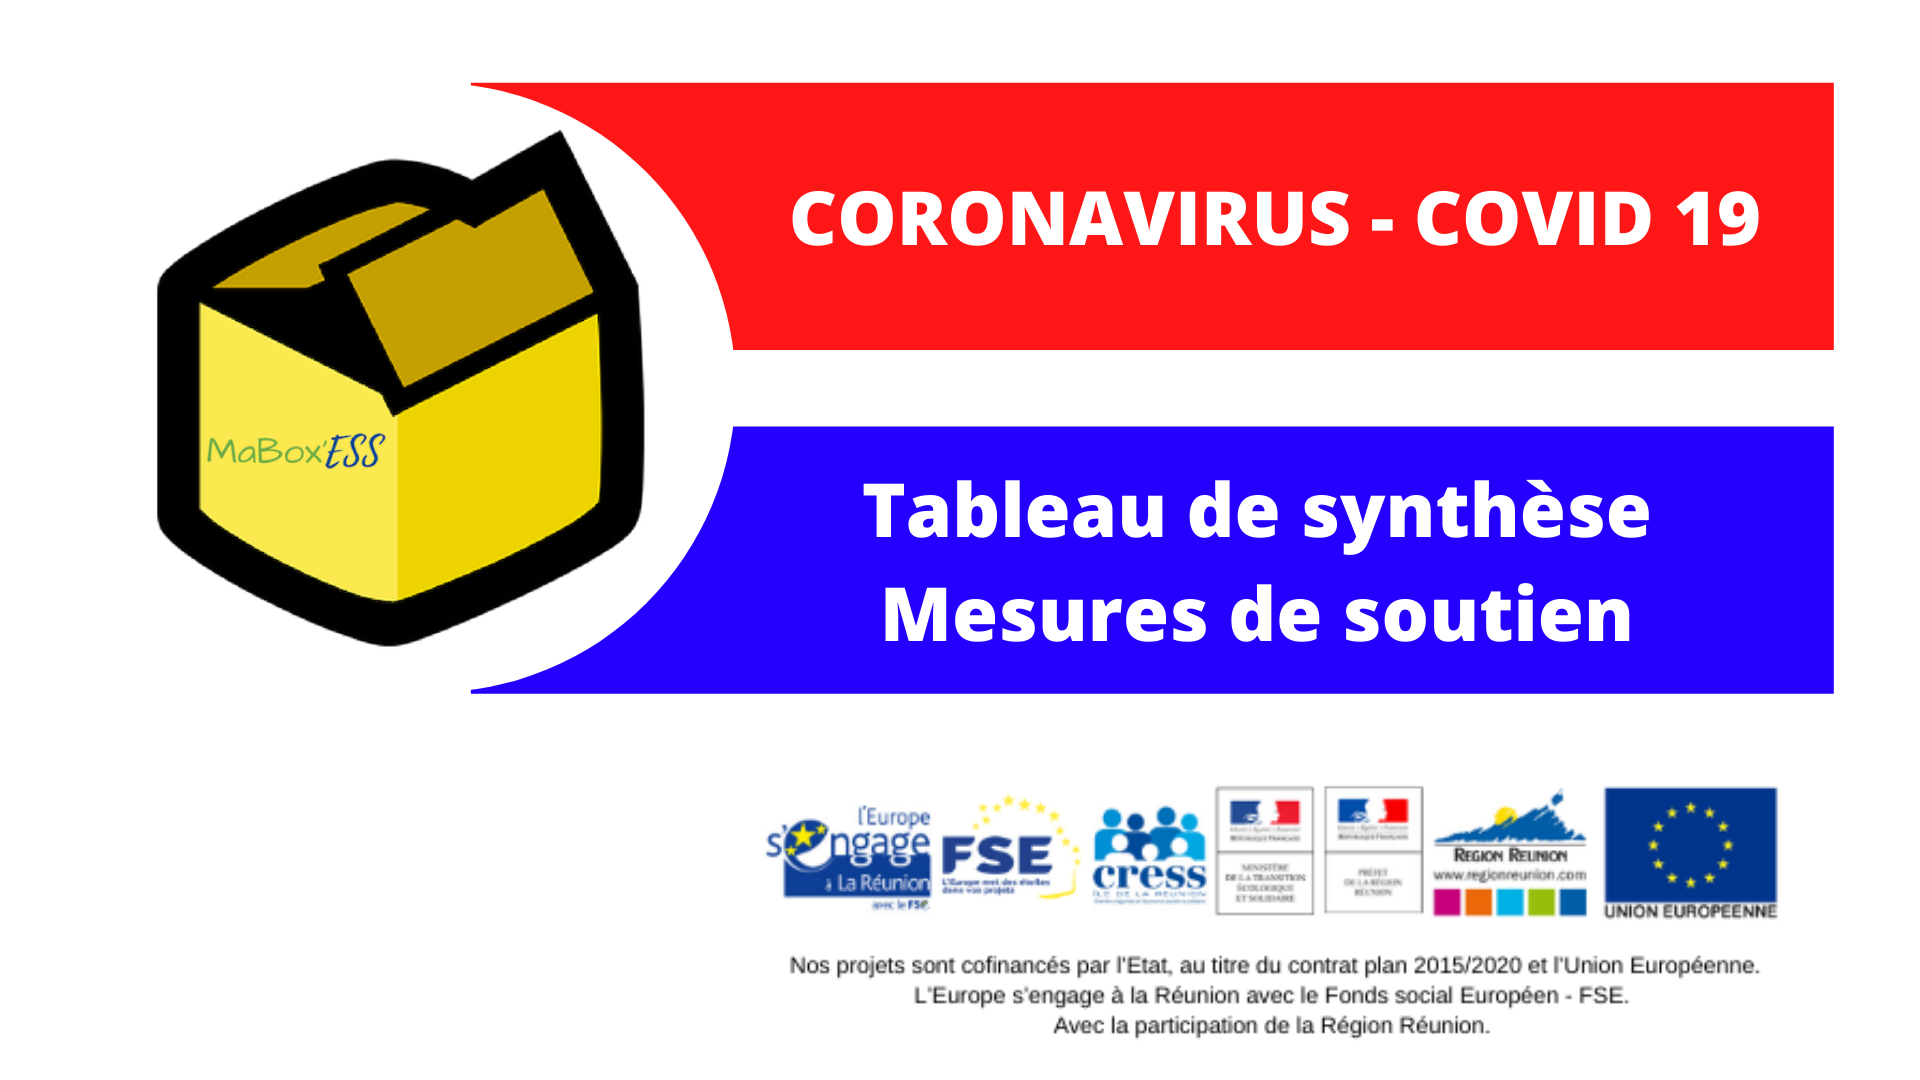 CRESS de La Réunion | COVID-19 | Tableau de synthèse des mesures de soutien